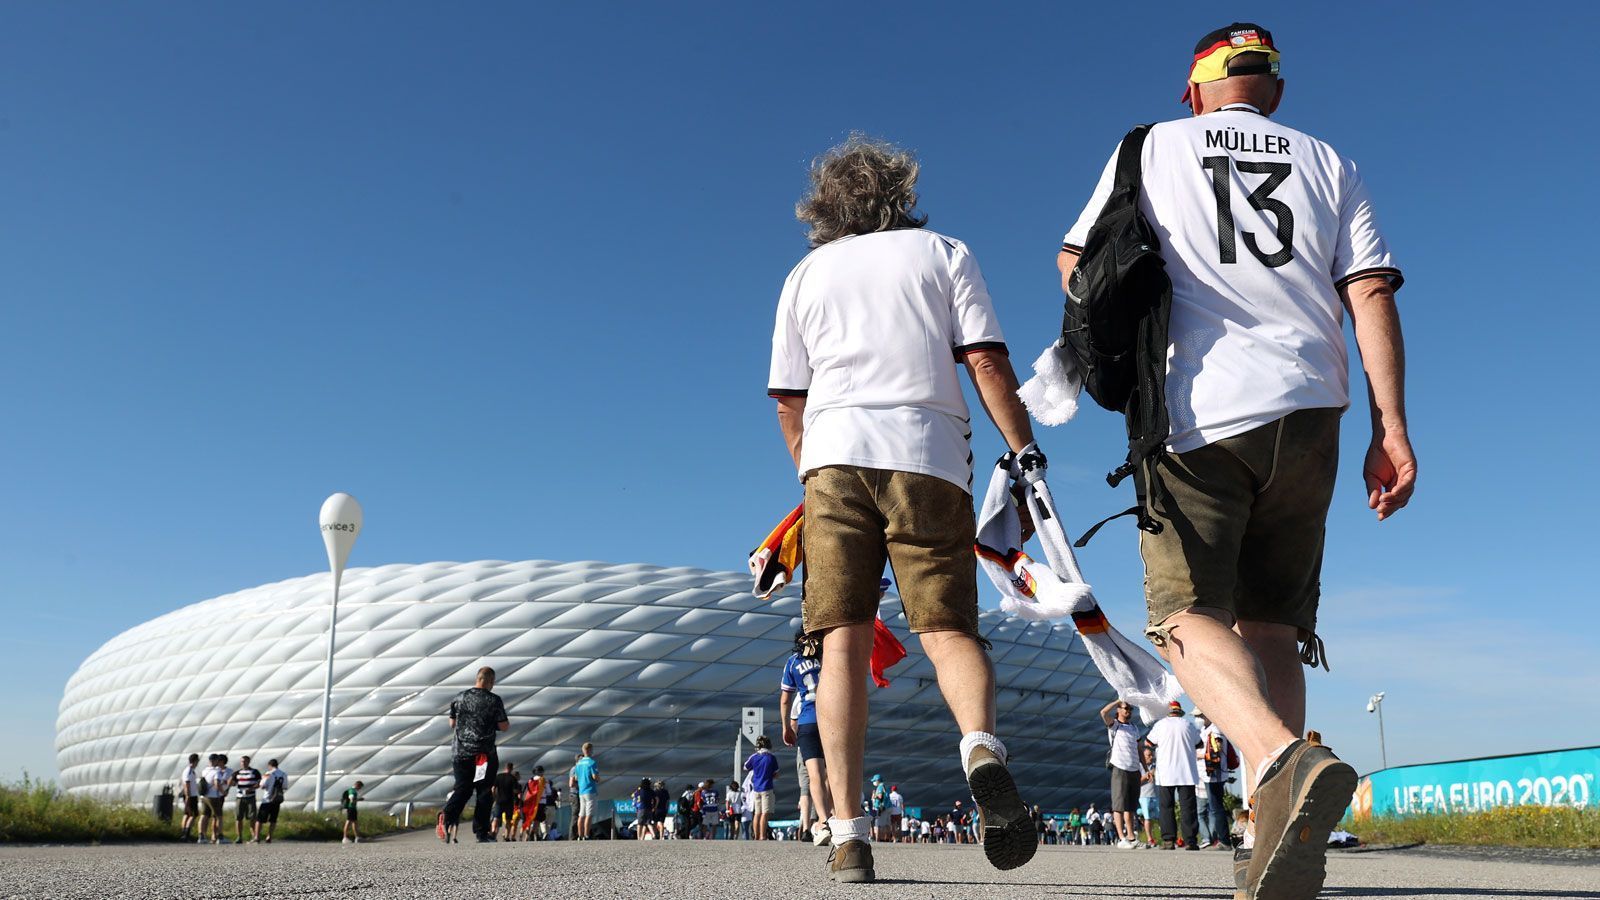 
                <strong>Auf in die Arena</strong><br>
                Während Portual erleichtert aufatmet, machen sich die deutschen Fans auf den Weg in die Allianz Arena. Hier wartet auf die DFB-Auswahl niemand Geringeres als Weltmeister Frankreich.
              